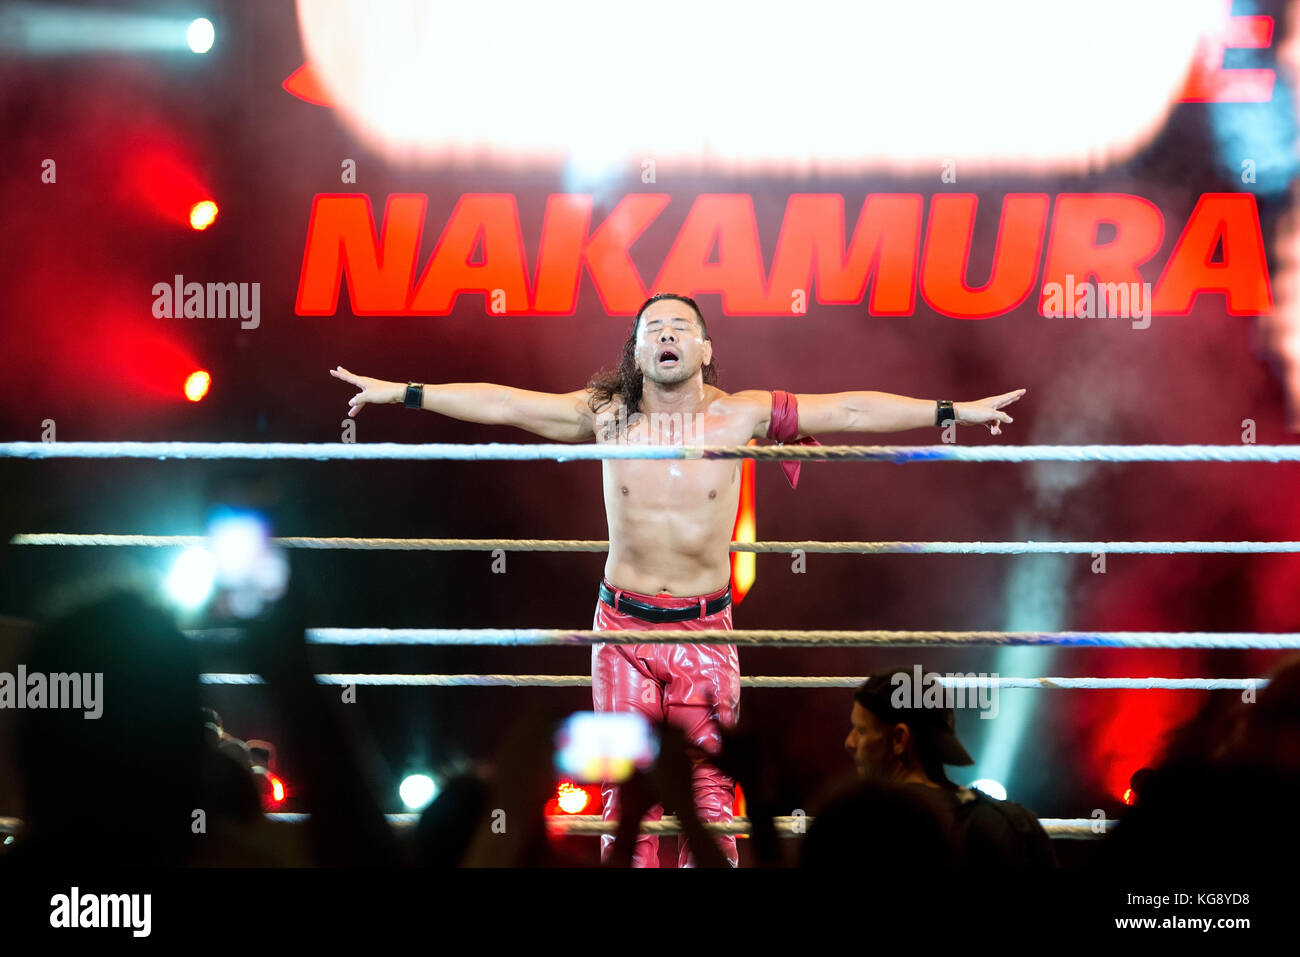 BARCELONA - NOV 4: The wrestler Shinsuke Nakamura in action at WWE Live at the Palau Sant Jordi on November 4, 2017 in Barcelona, Spain. Stock Photo